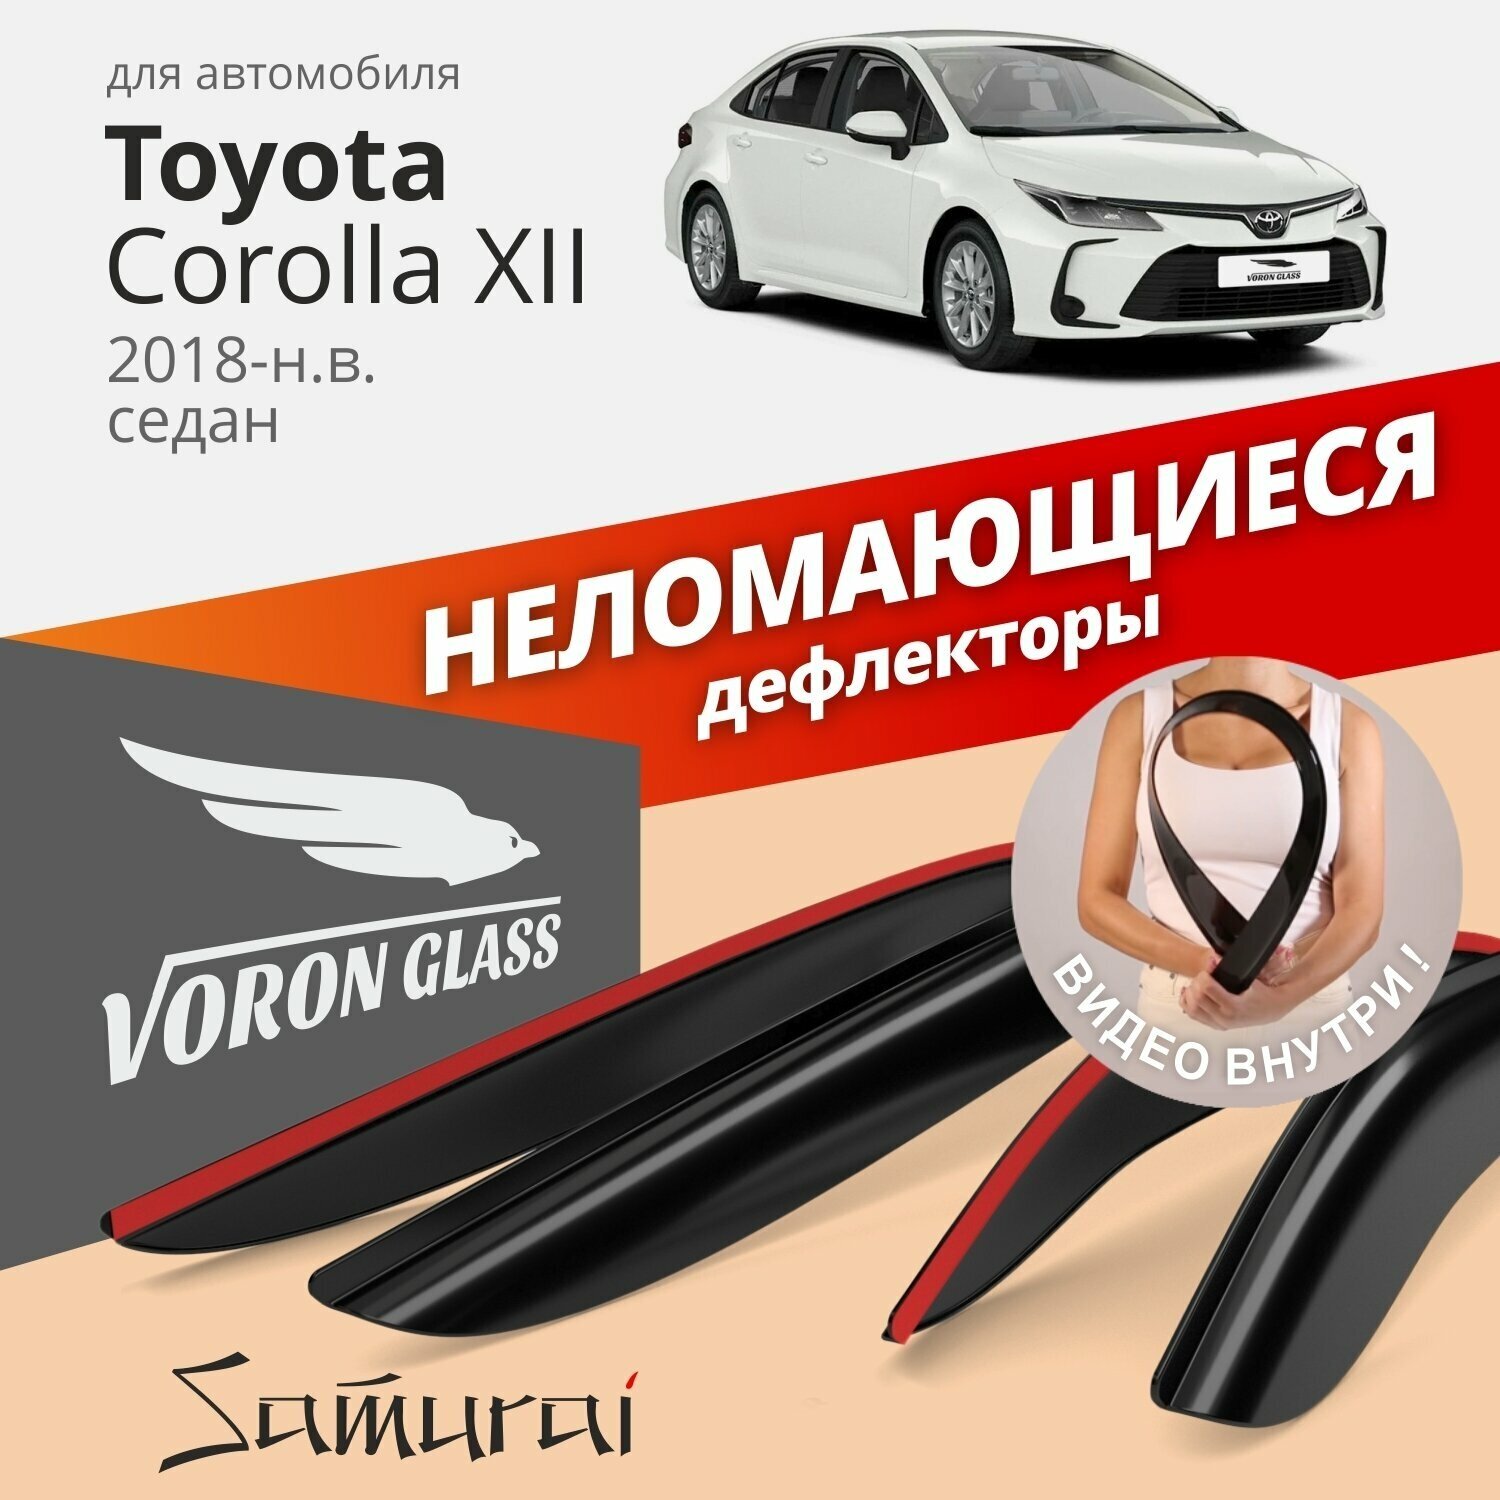 Дефлекторы окон неломающиеся Voron Glass серия Samurai для Toyota Corolla XII 2018-н. в. седан, накладные 4 шт.